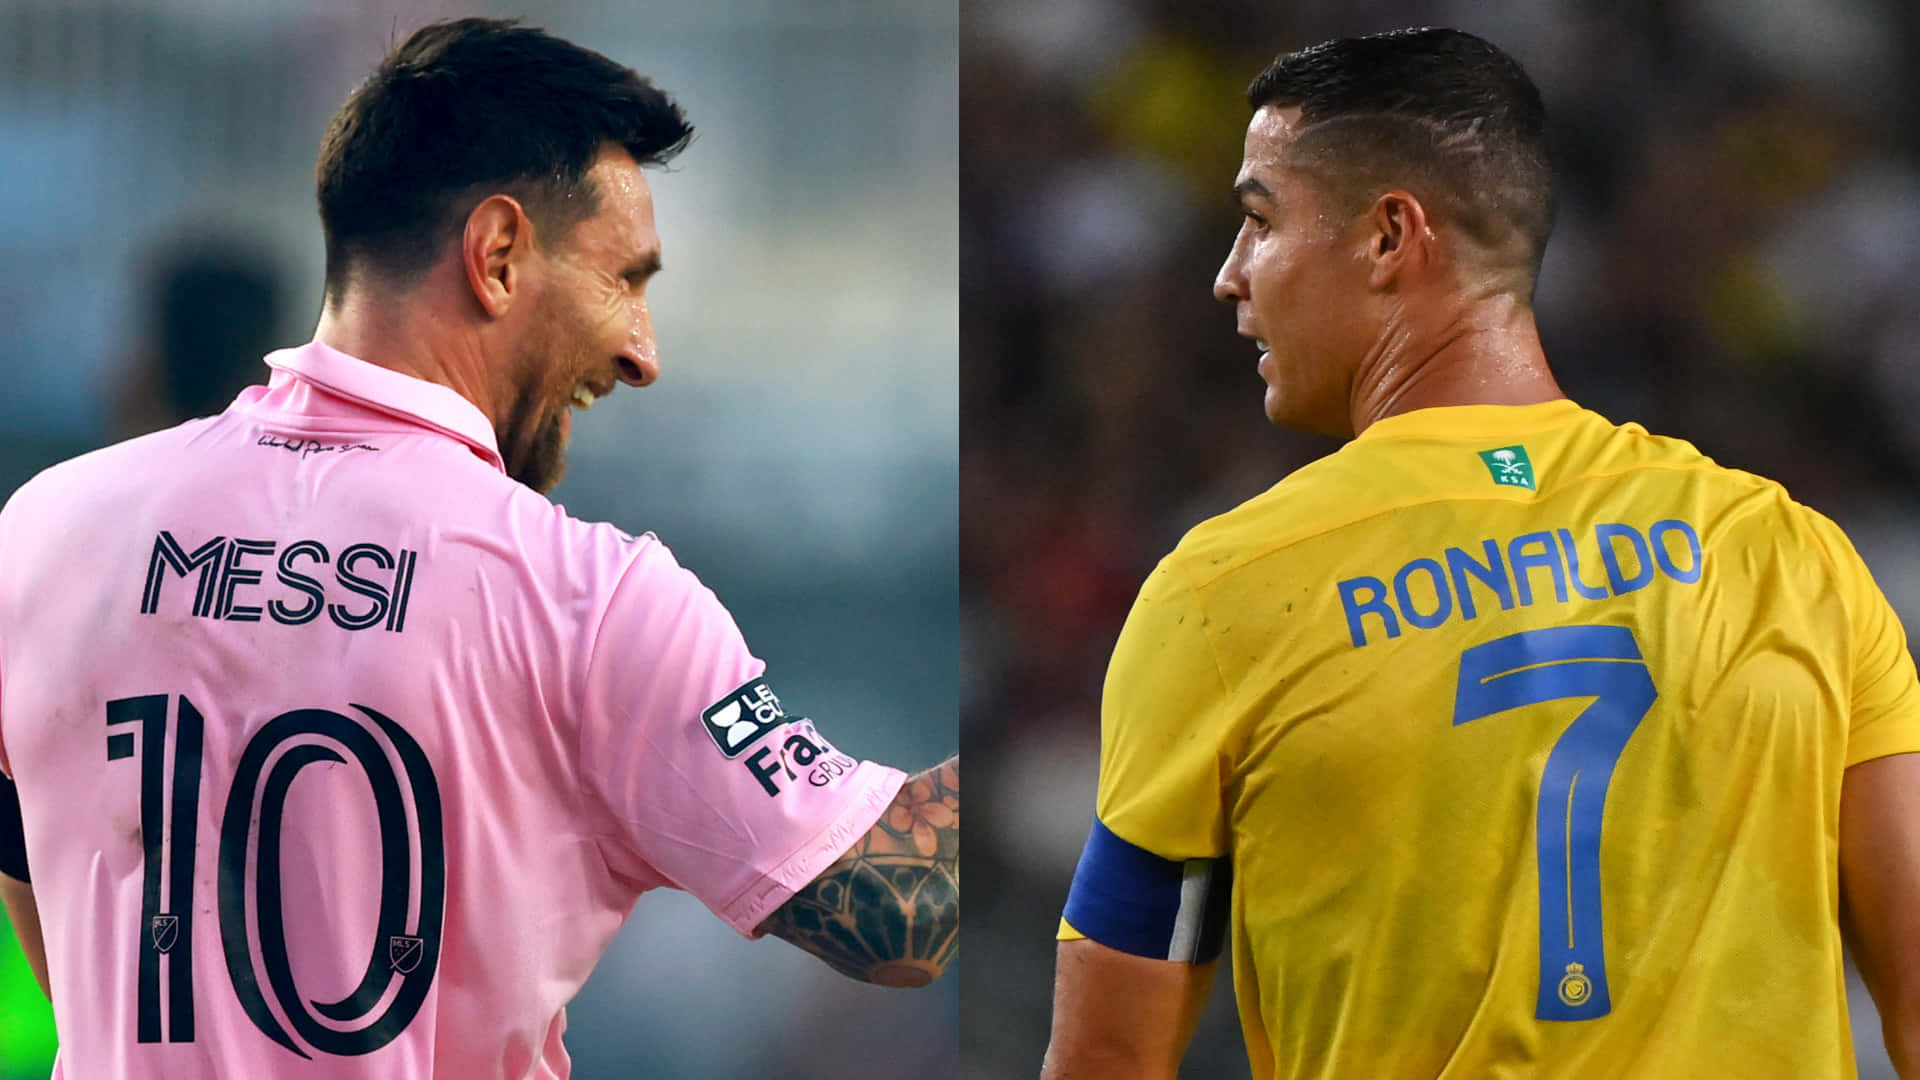 Messivs Ronaldo Jersey Comparison Wallpaper